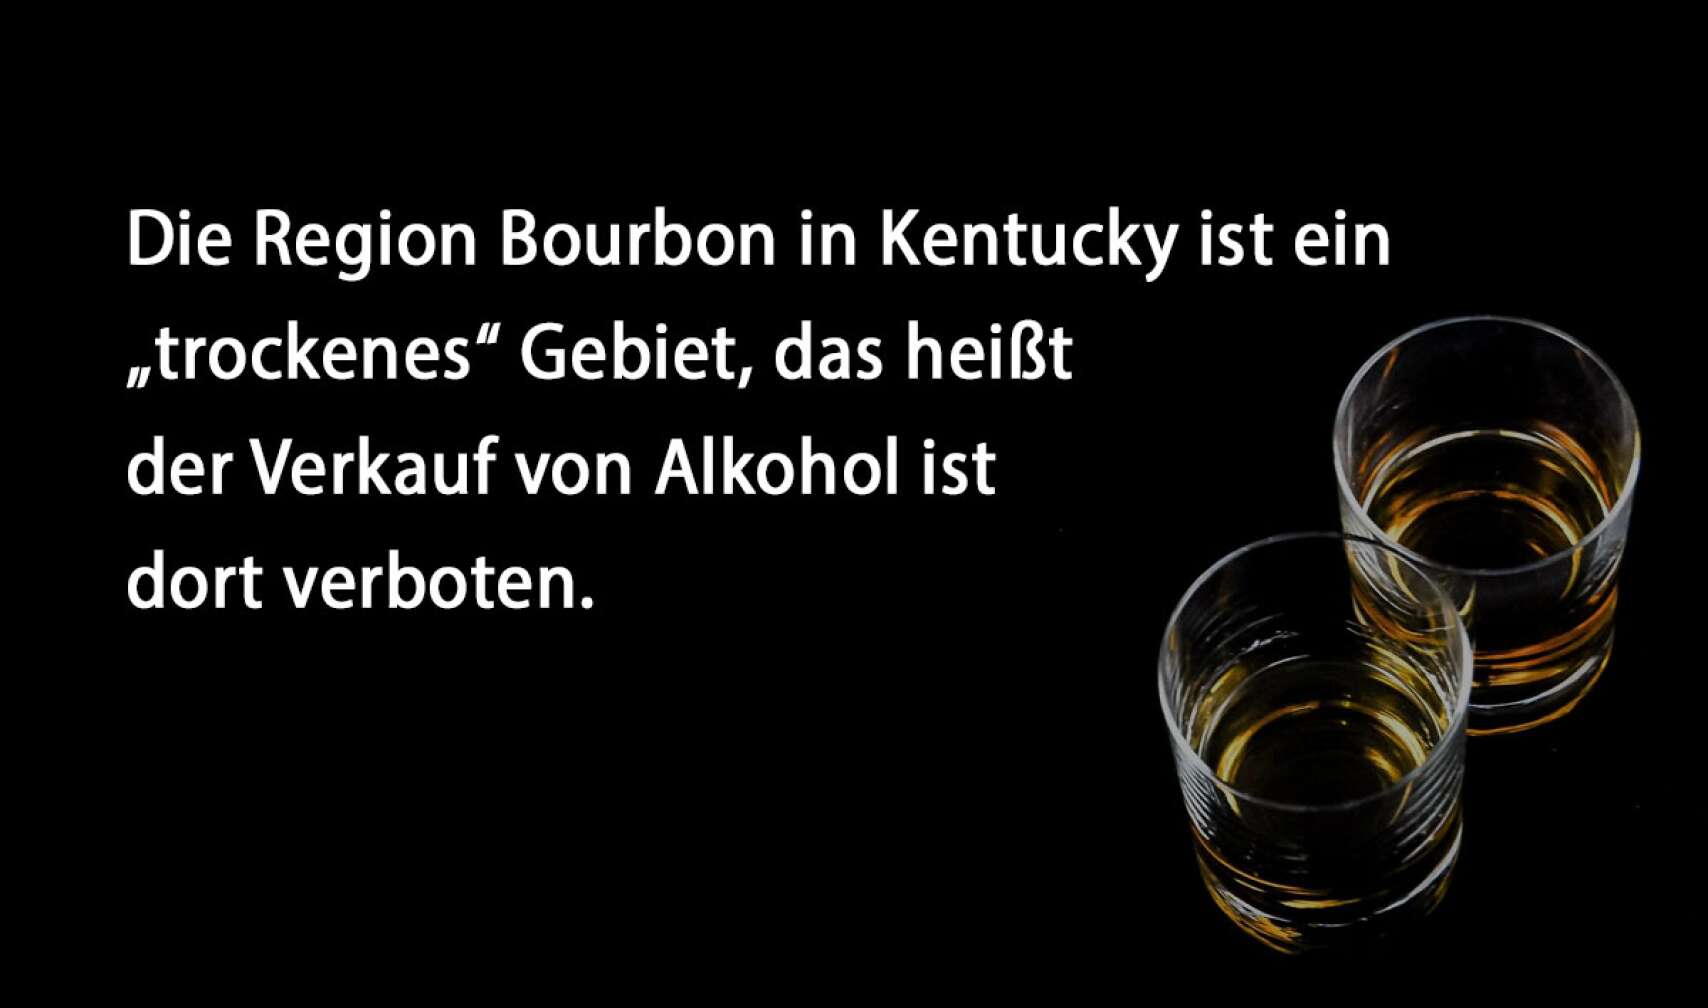 Die Region Bourbon in Kentucky ist ein „trockenes“ Gebiet, das heißt der Verkauf von Alkohol ist dort verboten.